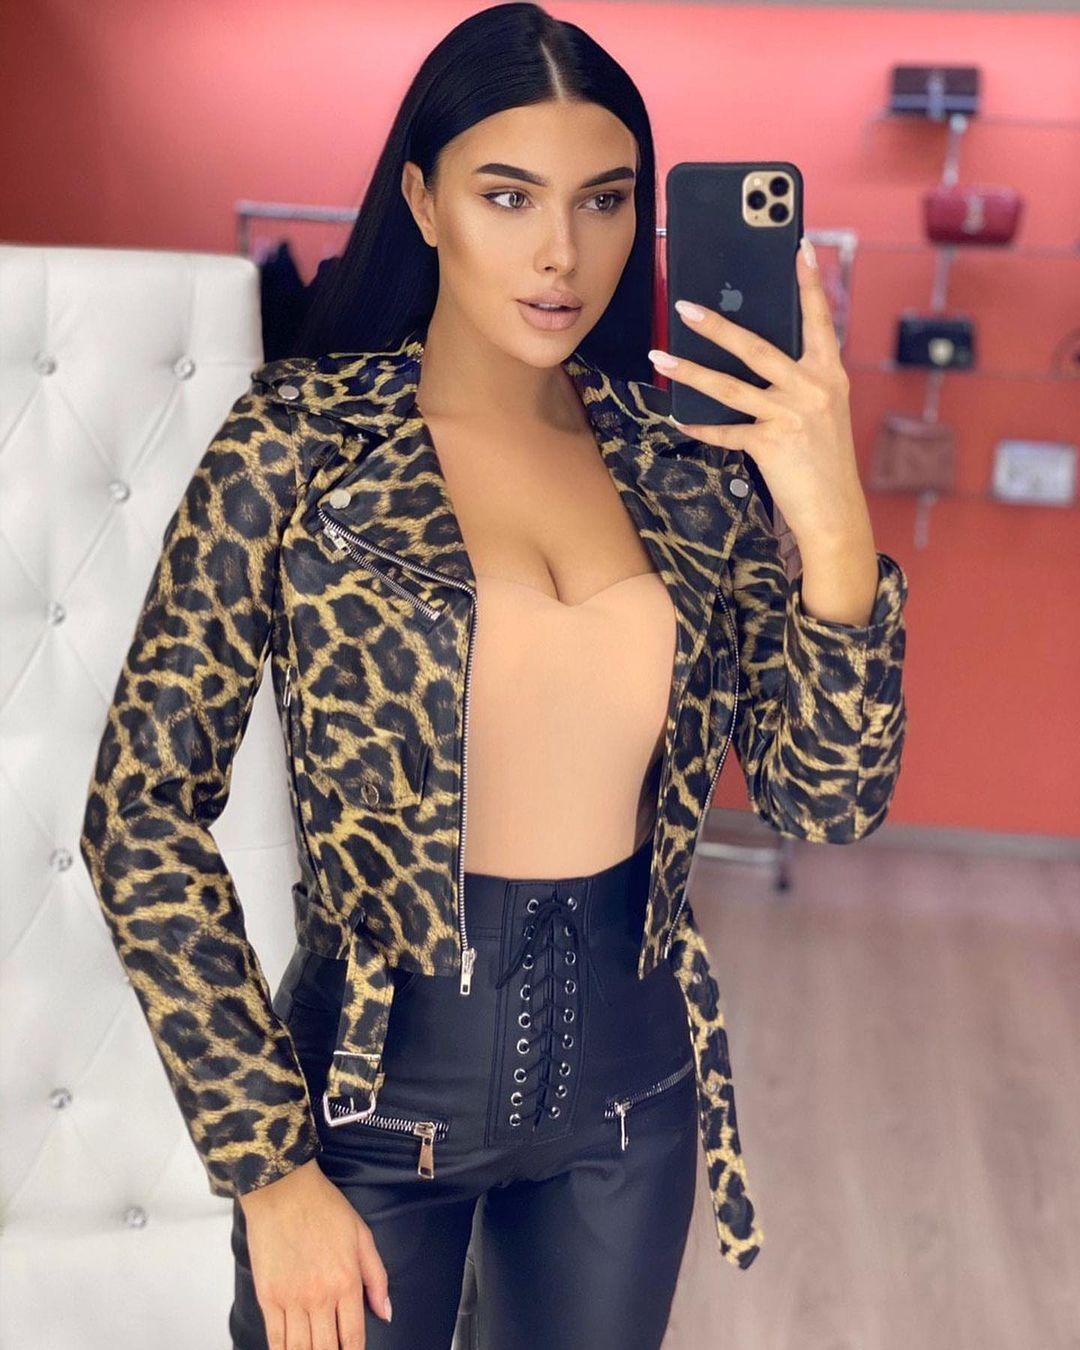 Куртка с леопардовым принтом / фото instagram.com